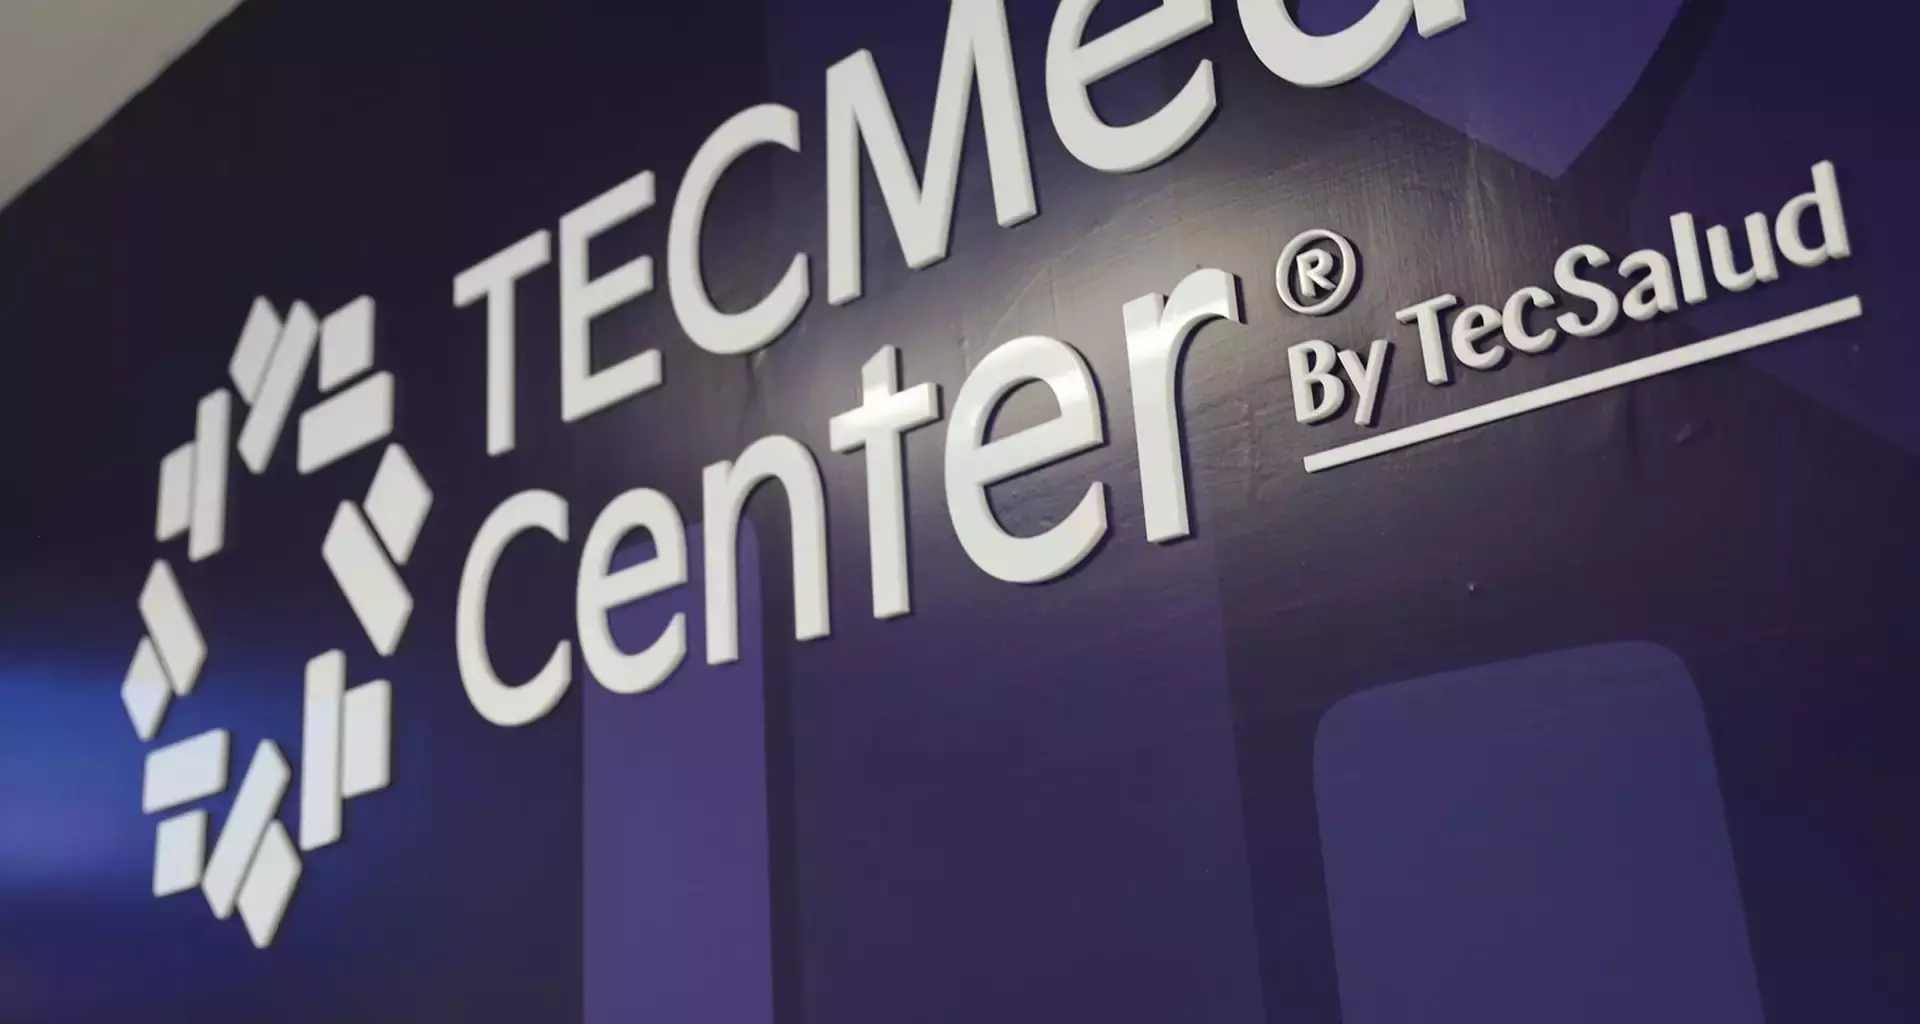 TECMed Center by TecSalud en campus Guadalajara.